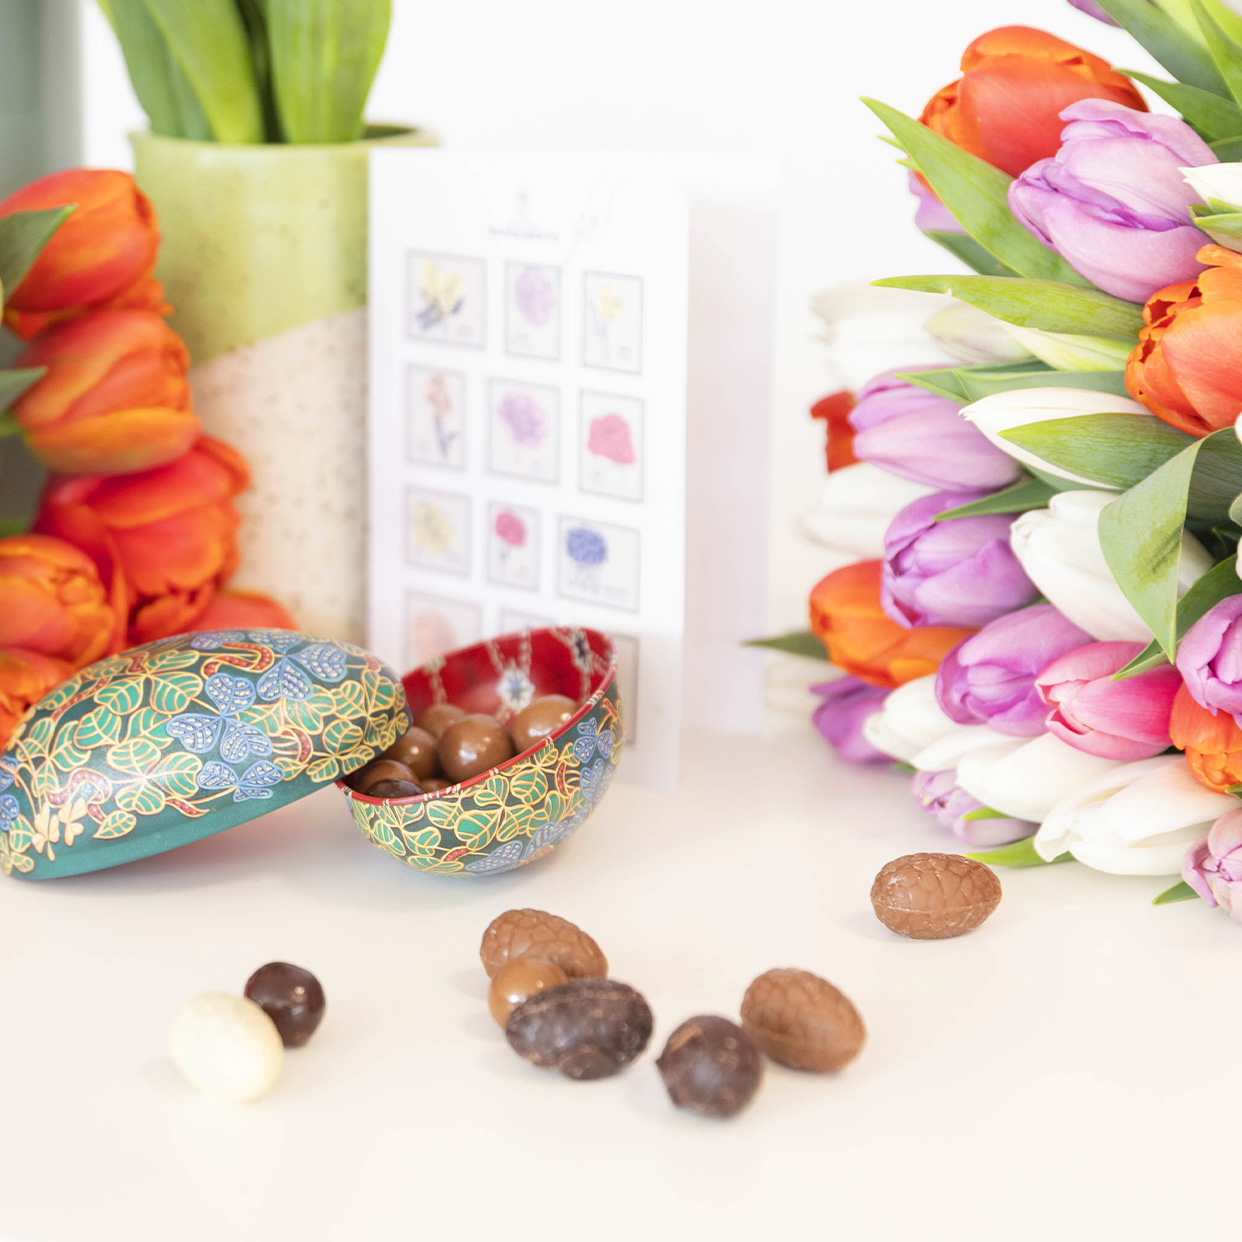 Des fleurs de saison et du chocolat pour célébrer Pâques